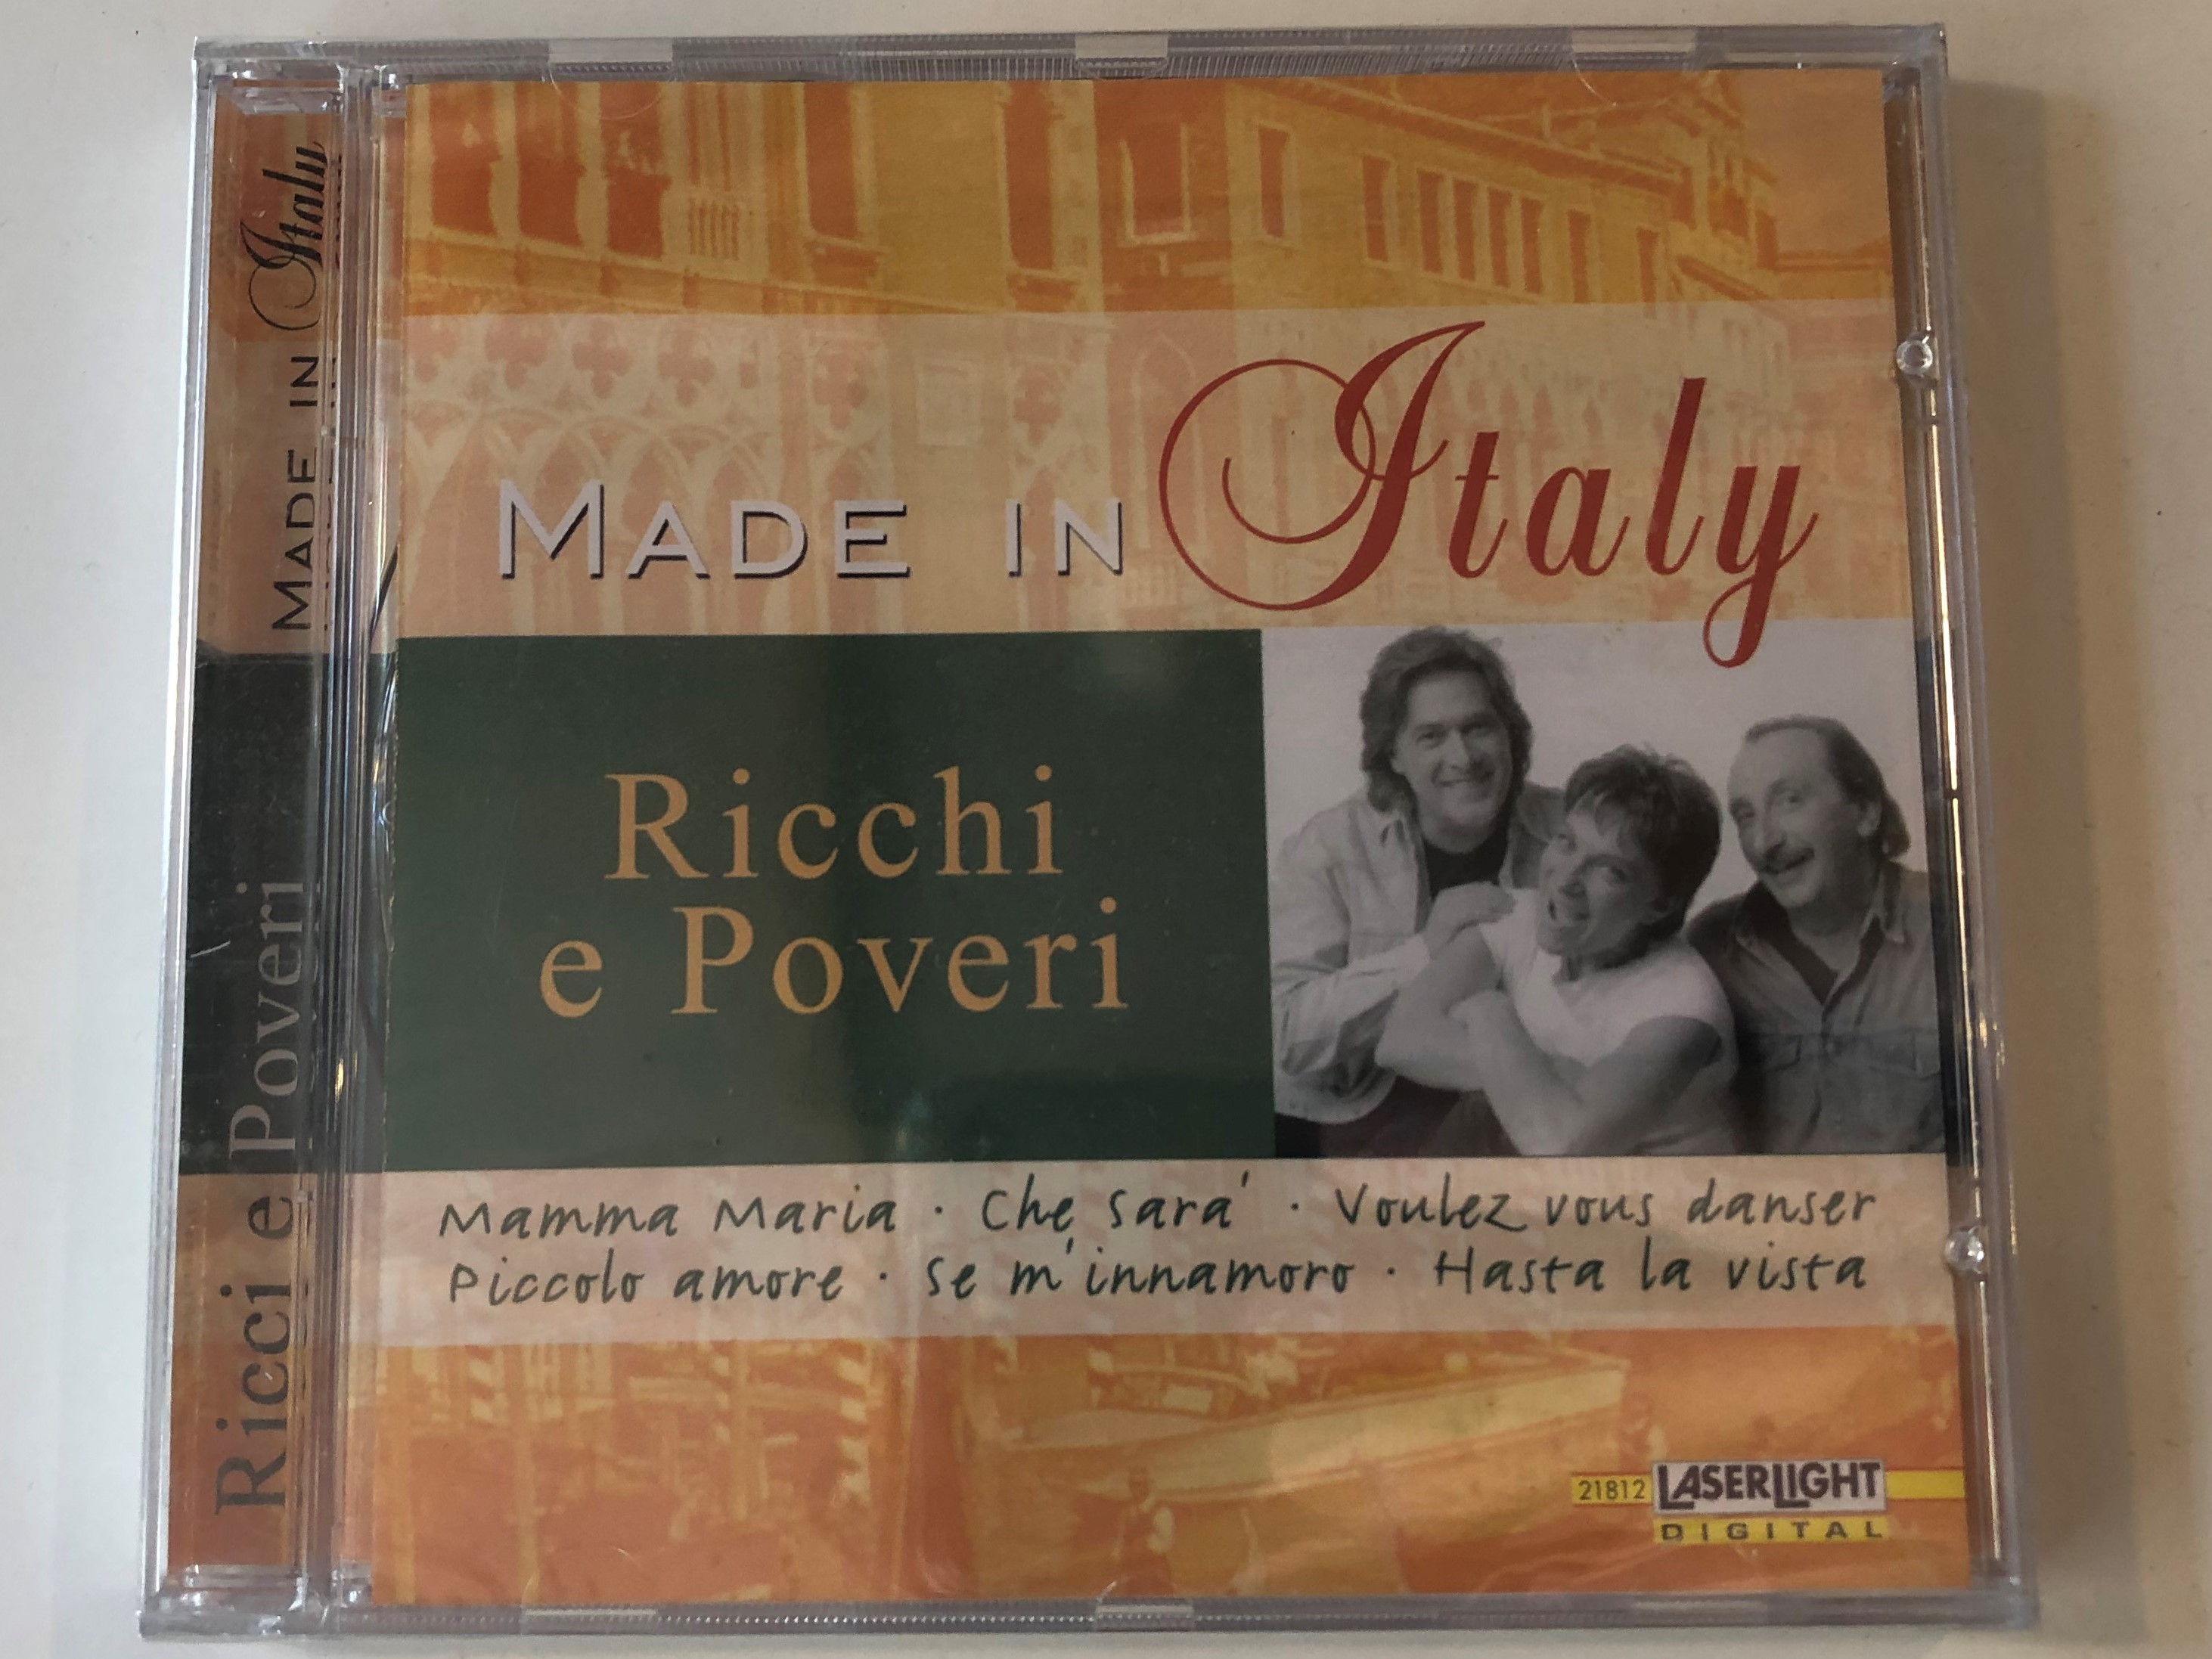 made-in-italy-ricchi-e-poveri-mamma-maria-che-sara-voulez-vous-danser-picolo-amore-se-m-innamoro-hasta-la-vista-laserlight-digital-audio-cd-2001-stereo-21-812-1-.jpg